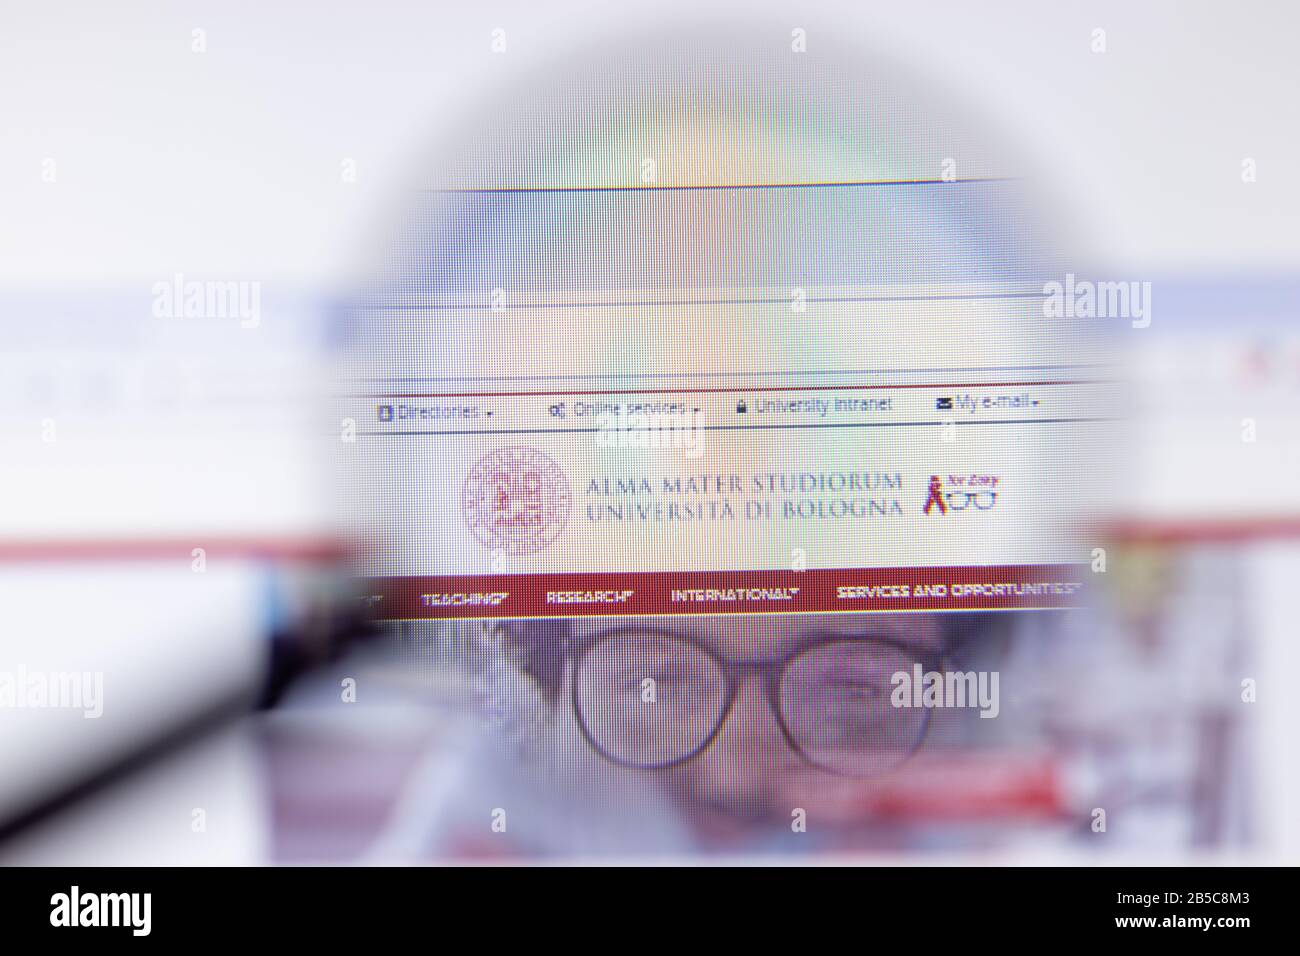 Los Angeles, Kalifornien, USA - 7. März 2020: Alma Mater Studiorum - Homepage Logo der Website der Universität von Bologna im Nahbereich zu sehen Stockfoto